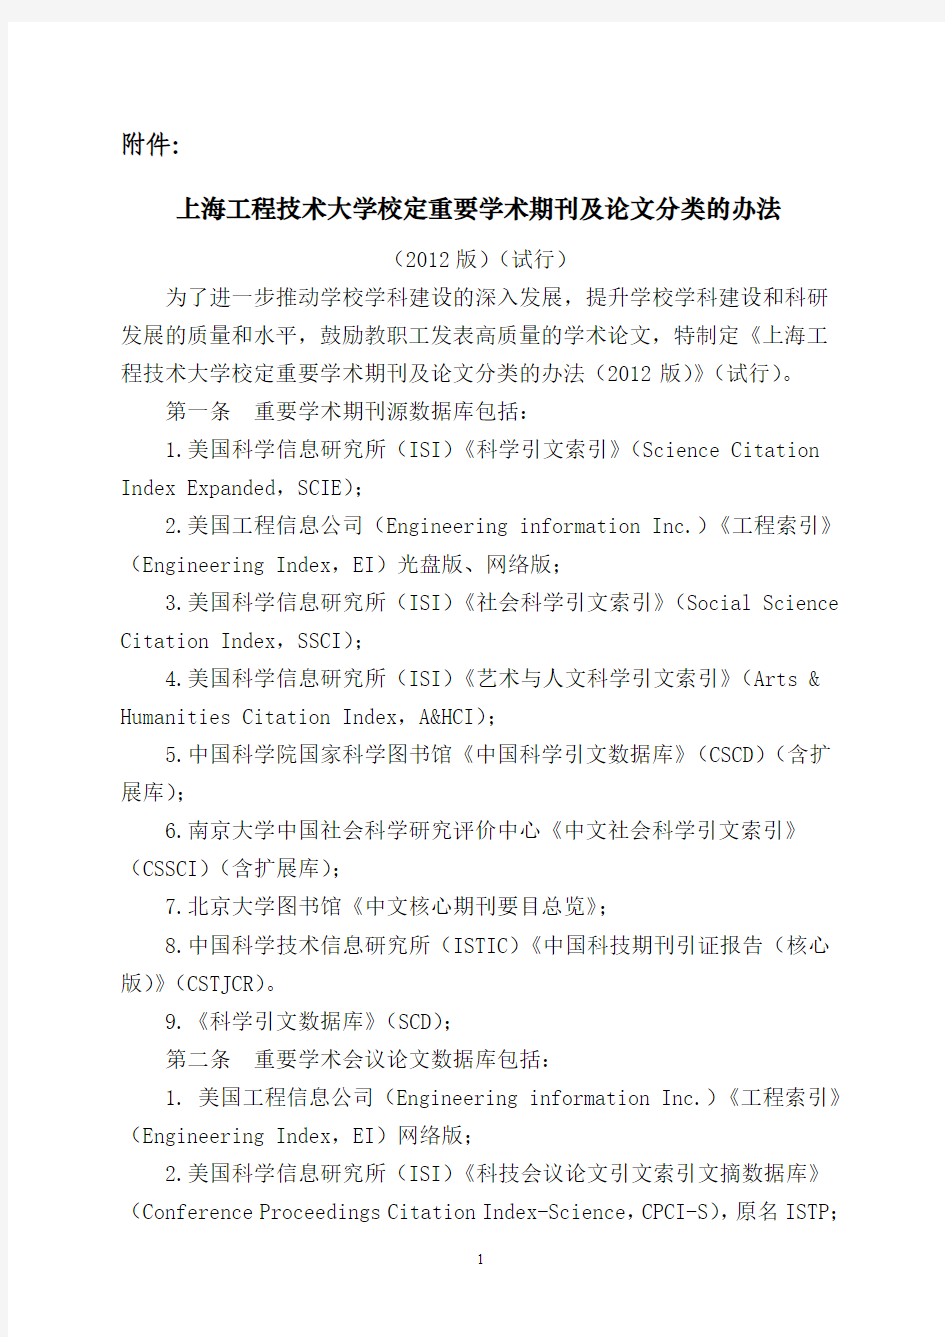 上海工程技术大学文件